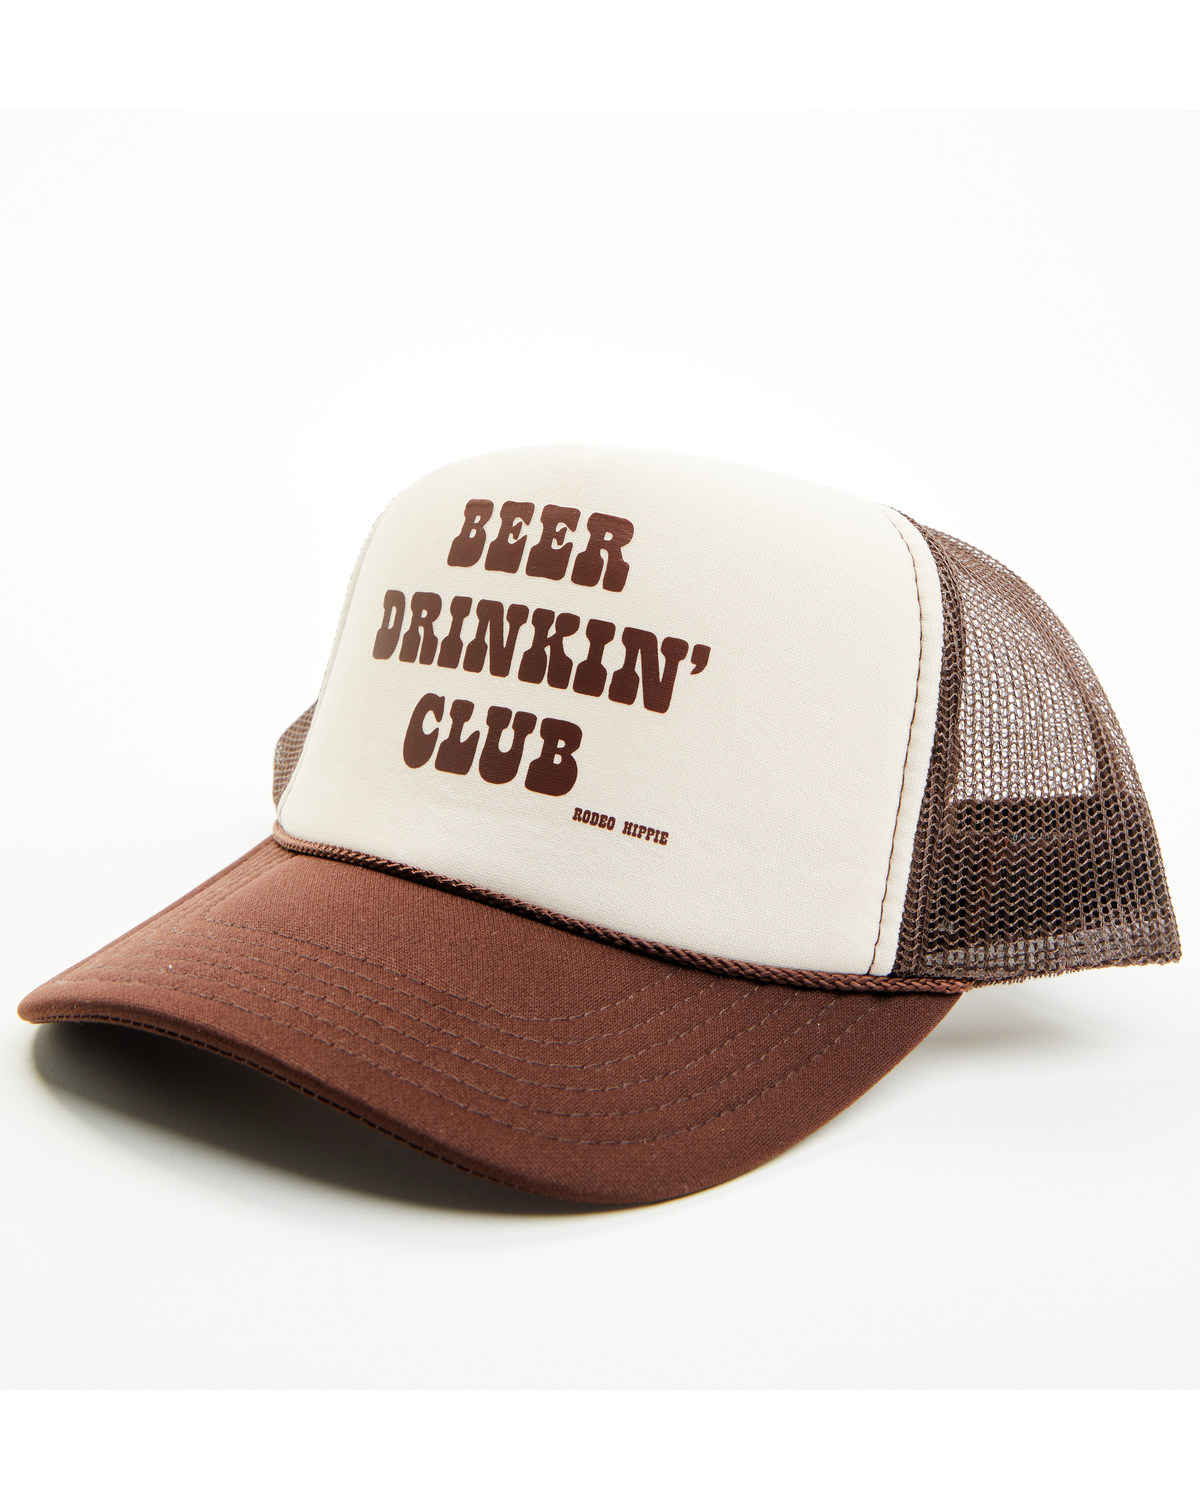 Rodeo Hippie Women's Beer Drinkin' Club Ball Cap